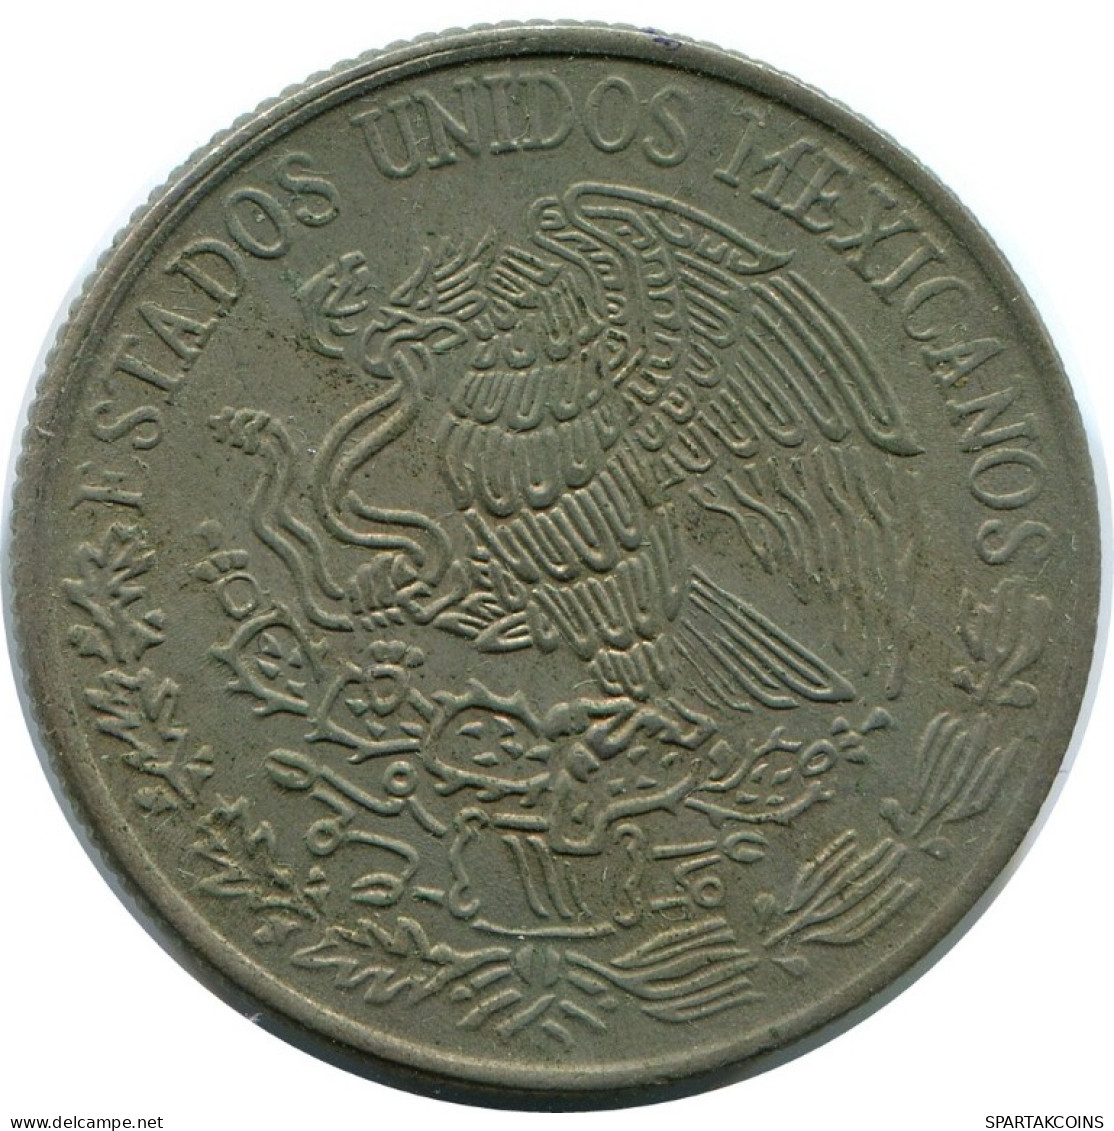 50 CENTAVOS 1980 MEXICO Coin #AH490.5.U.A - Messico